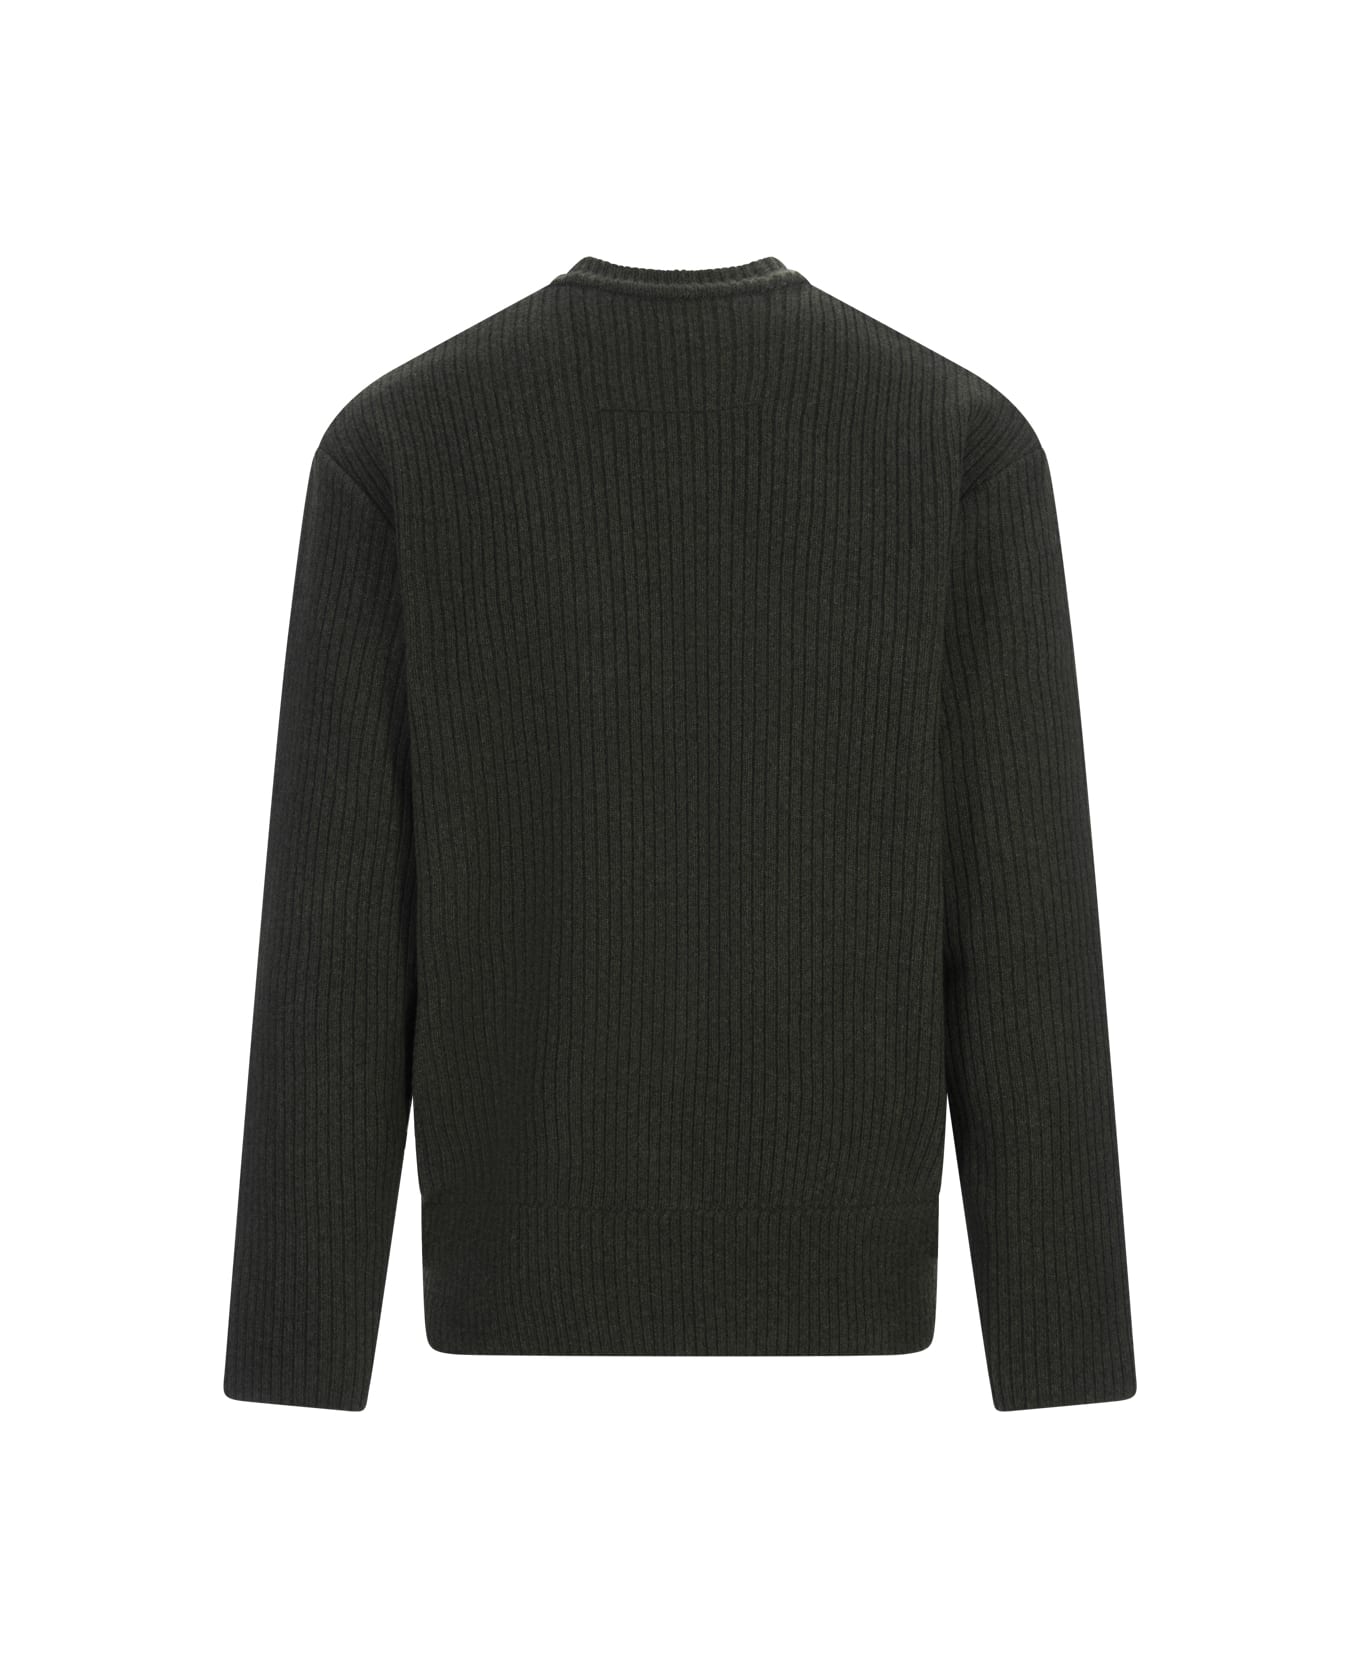 Givenchy Ribbed Sweater - Green ニットウェア